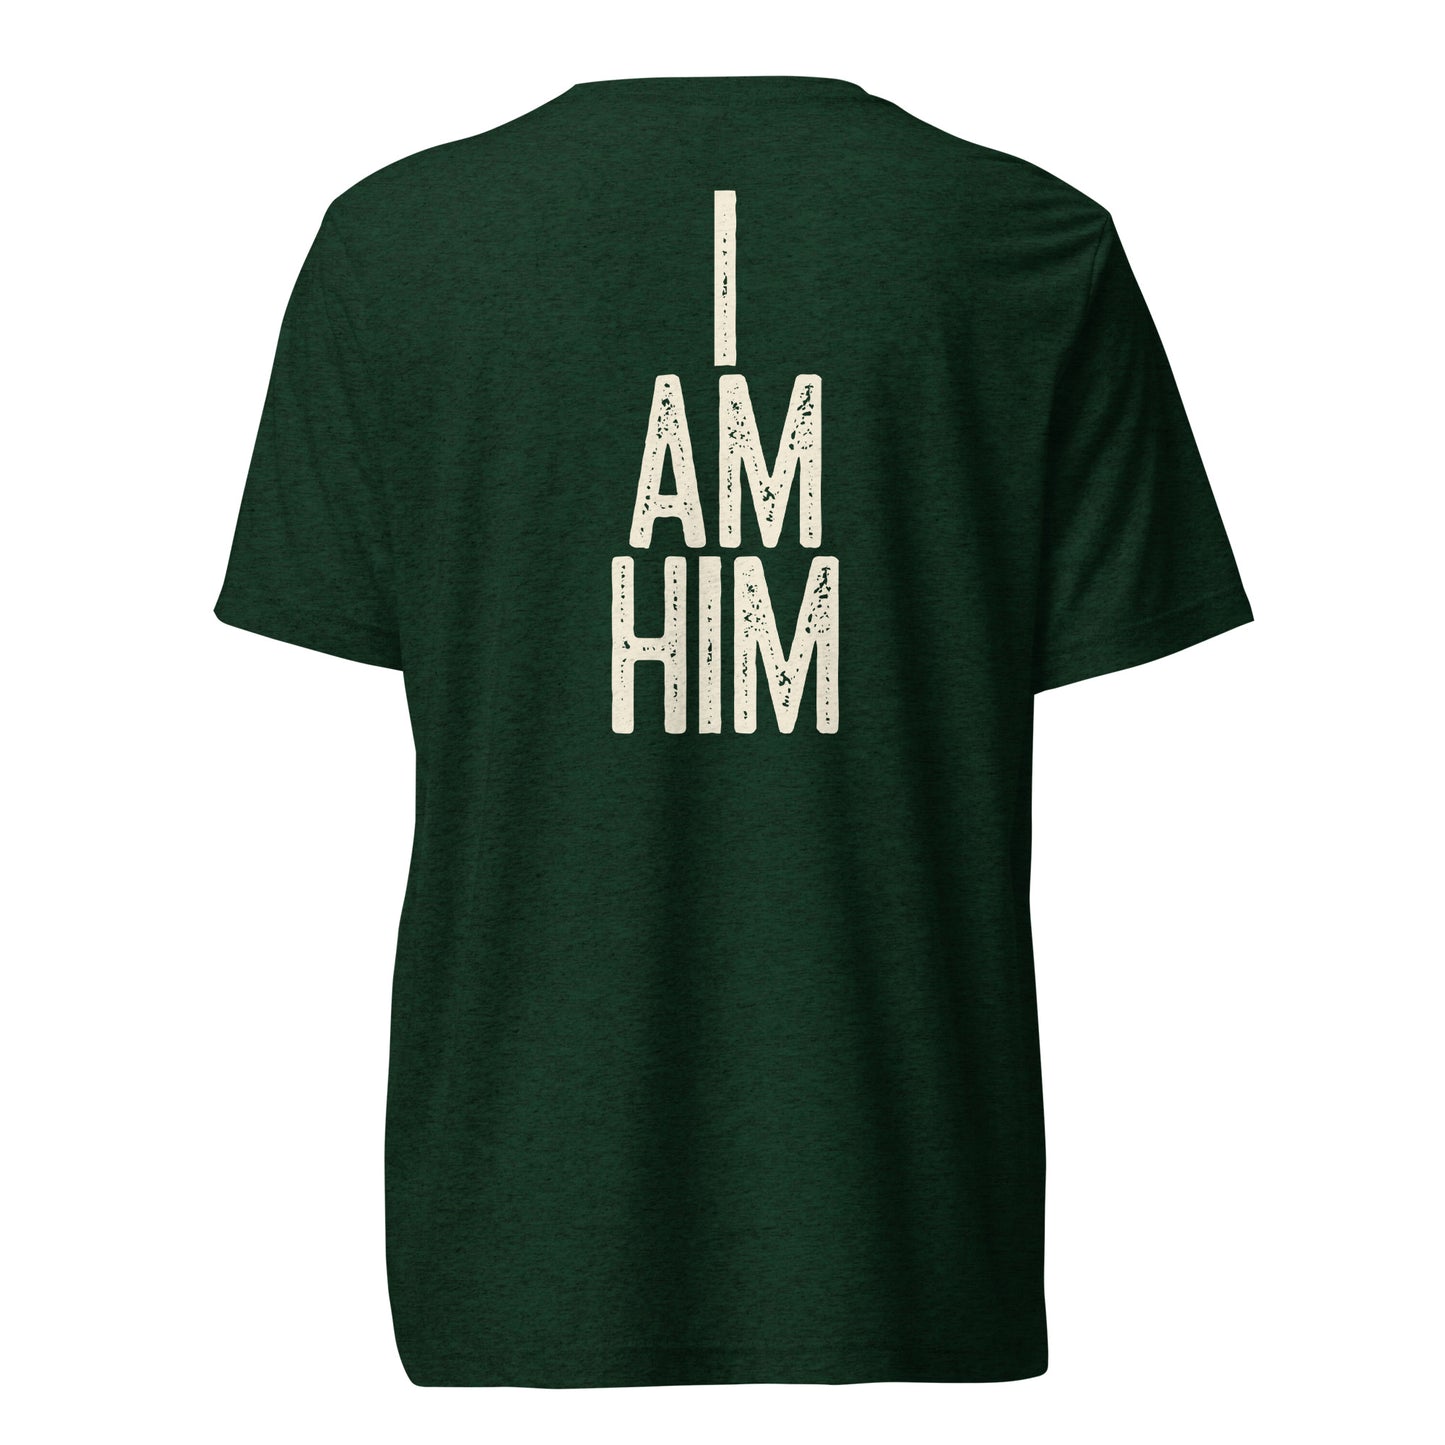 "I AM HIM" - Short sleeve t-shirt